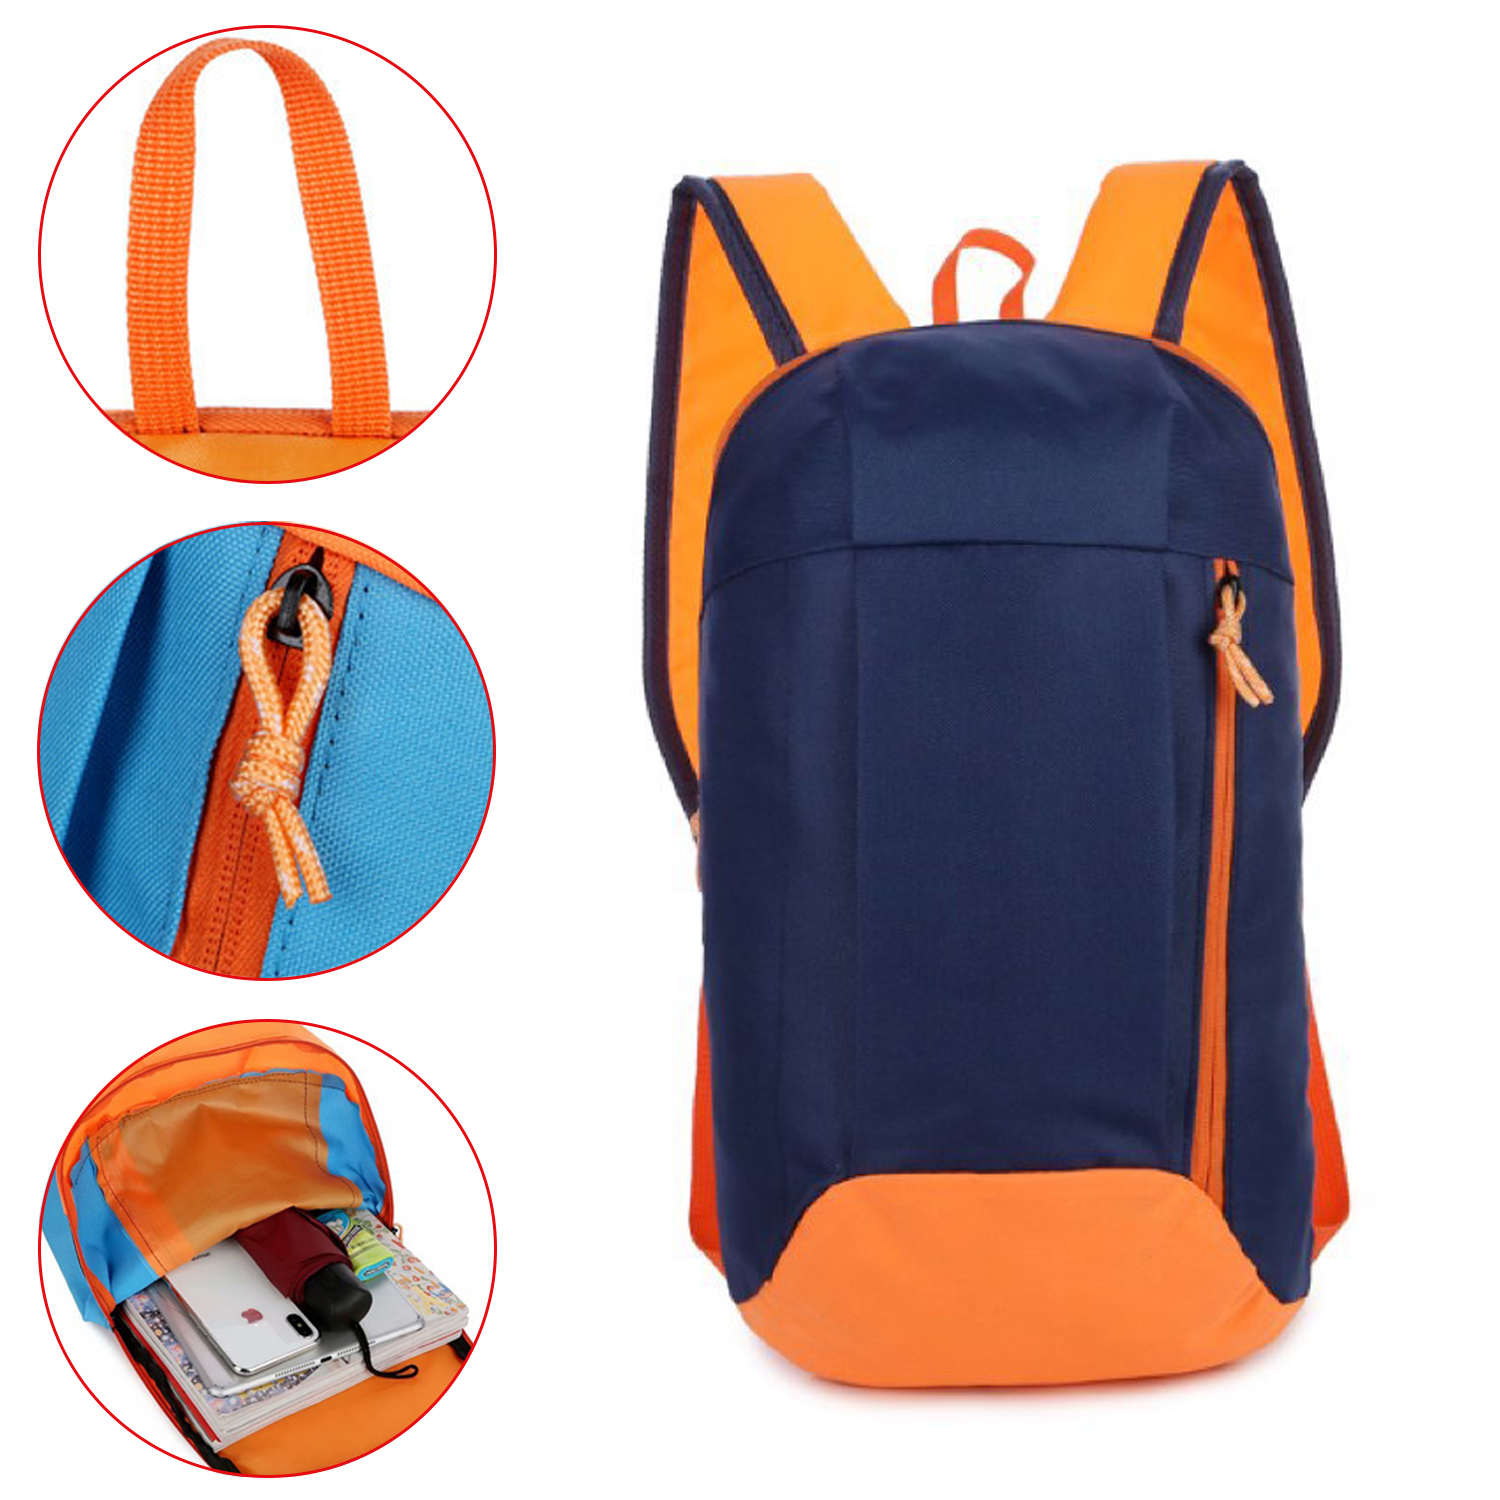 Mochila impermeable, funda para mochila, multifunción, para senderismo y viaje, bolsa para montar al aire libre, mochila de ocio